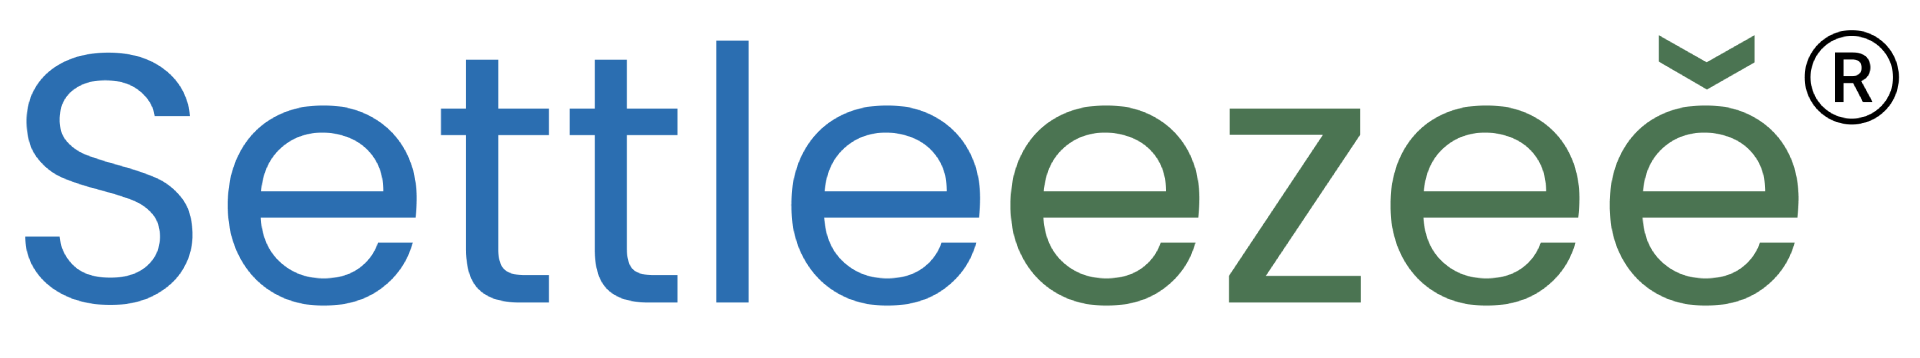 Settleezee Logo with Trademark-ctc-02